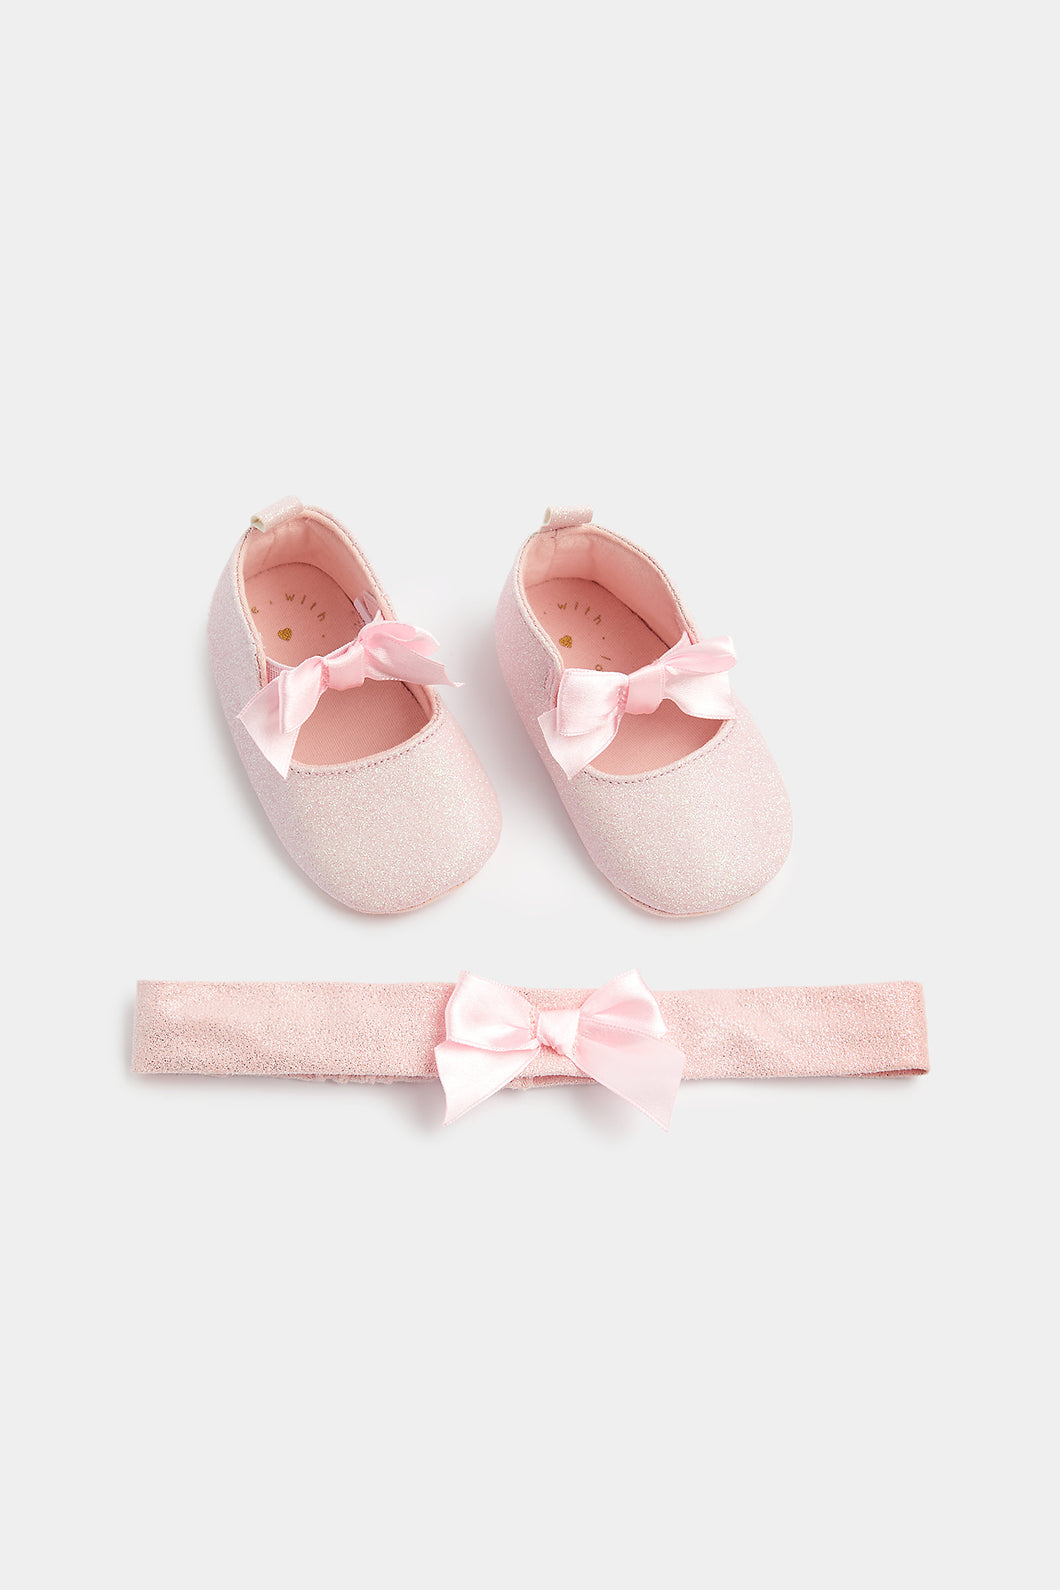 Mothercare 粉紅色閃閃嬰兒鞋和頭帶套裝